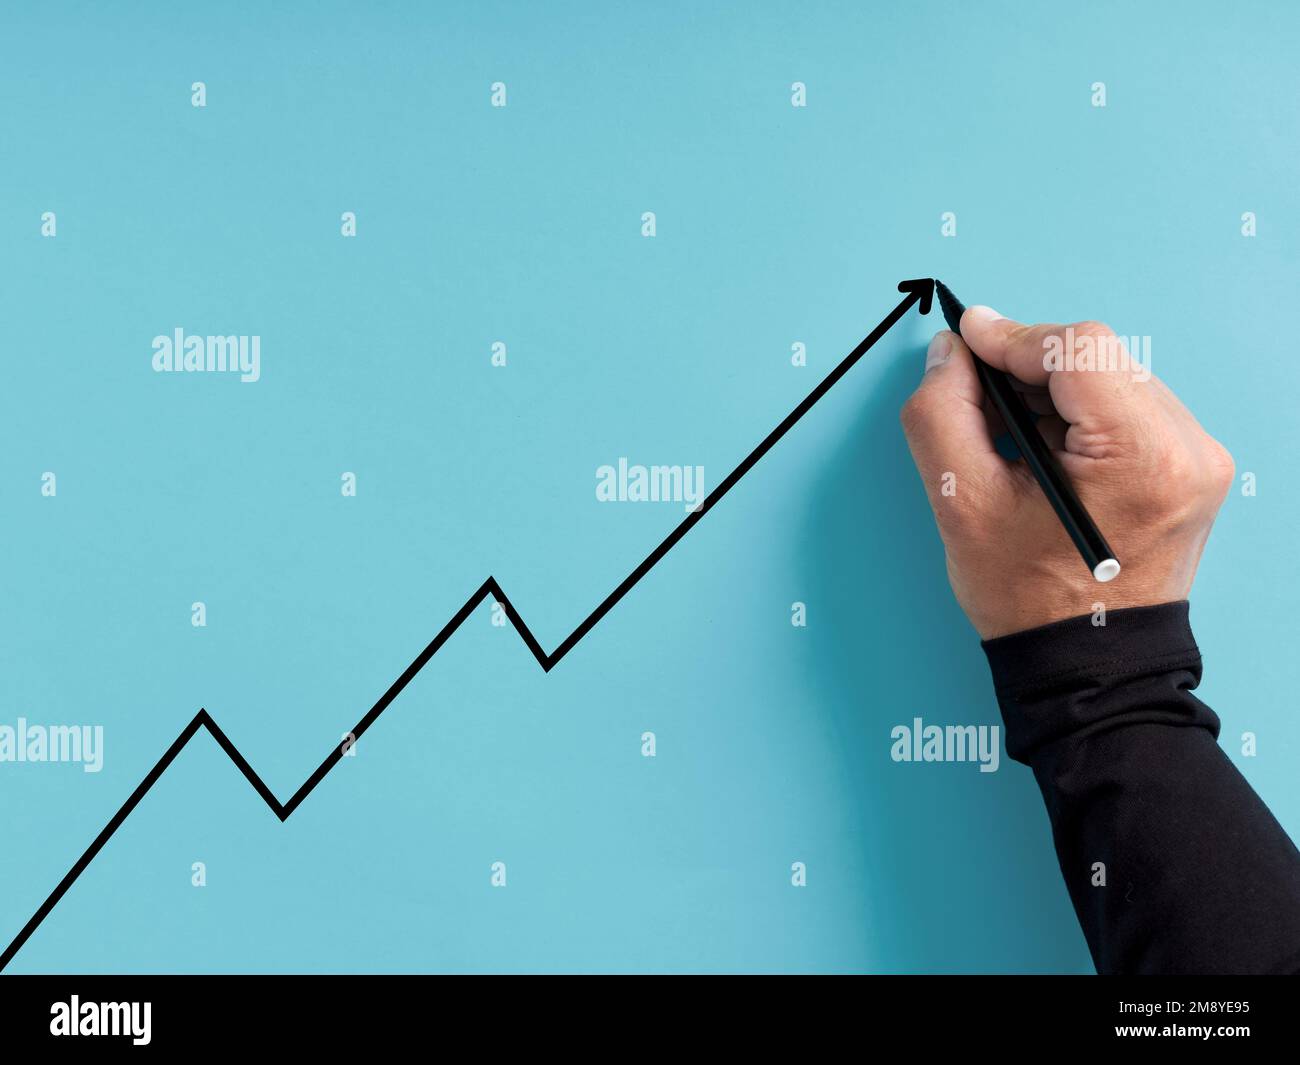 Concetto di crescita e sviluppo economico o commerciale. La mano disegna una linea ascendente su sfondo blu. Foto Stock